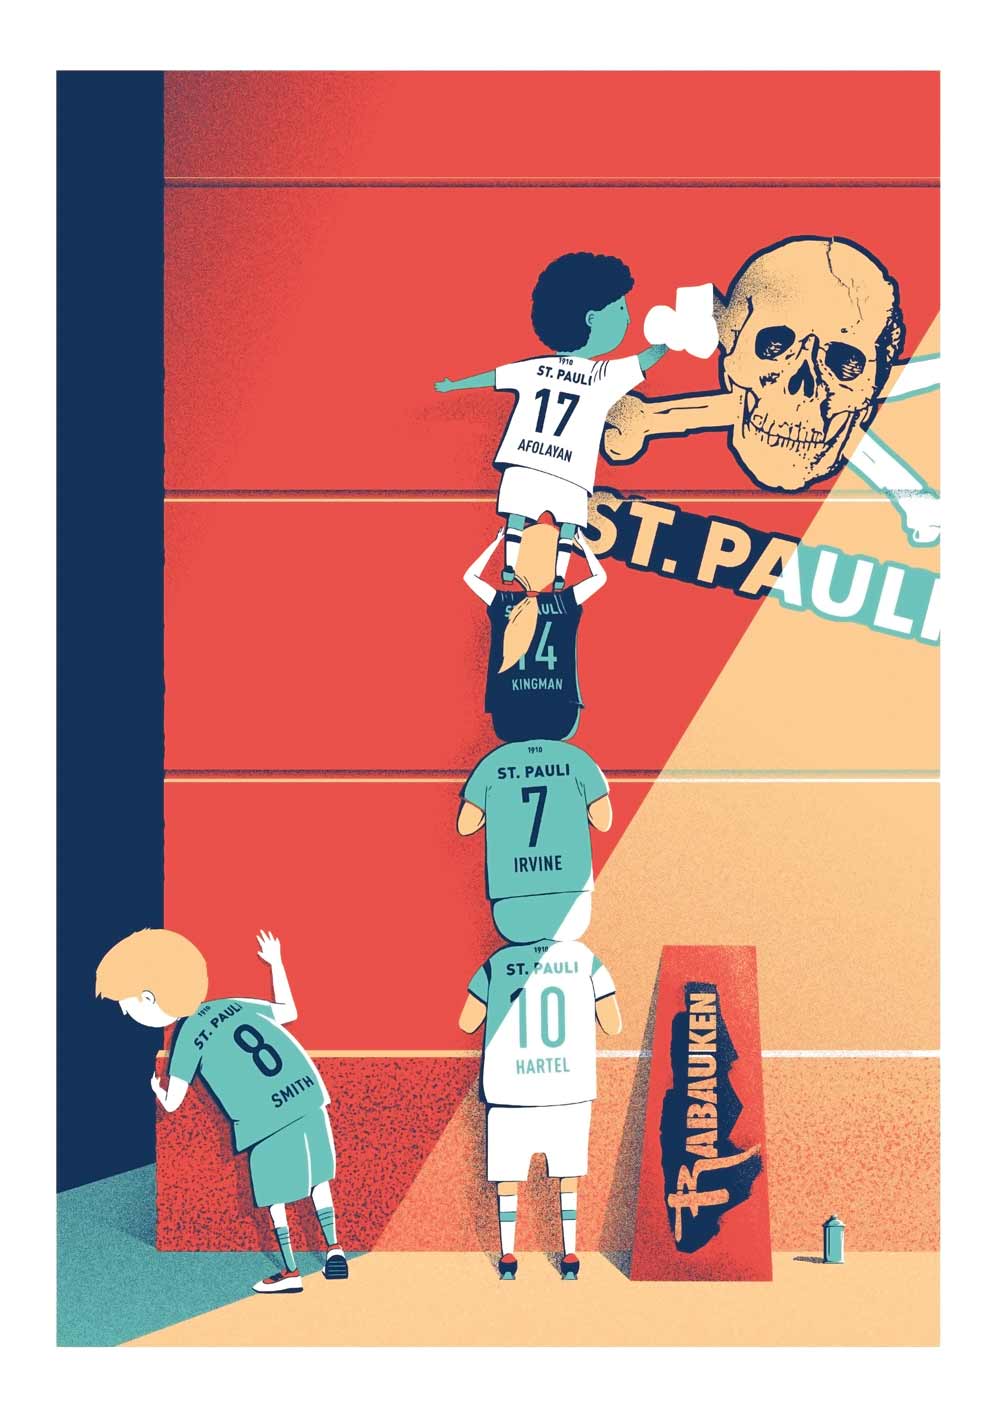 Kunstdruck #7: Print-ciples of FC St. Pauli 